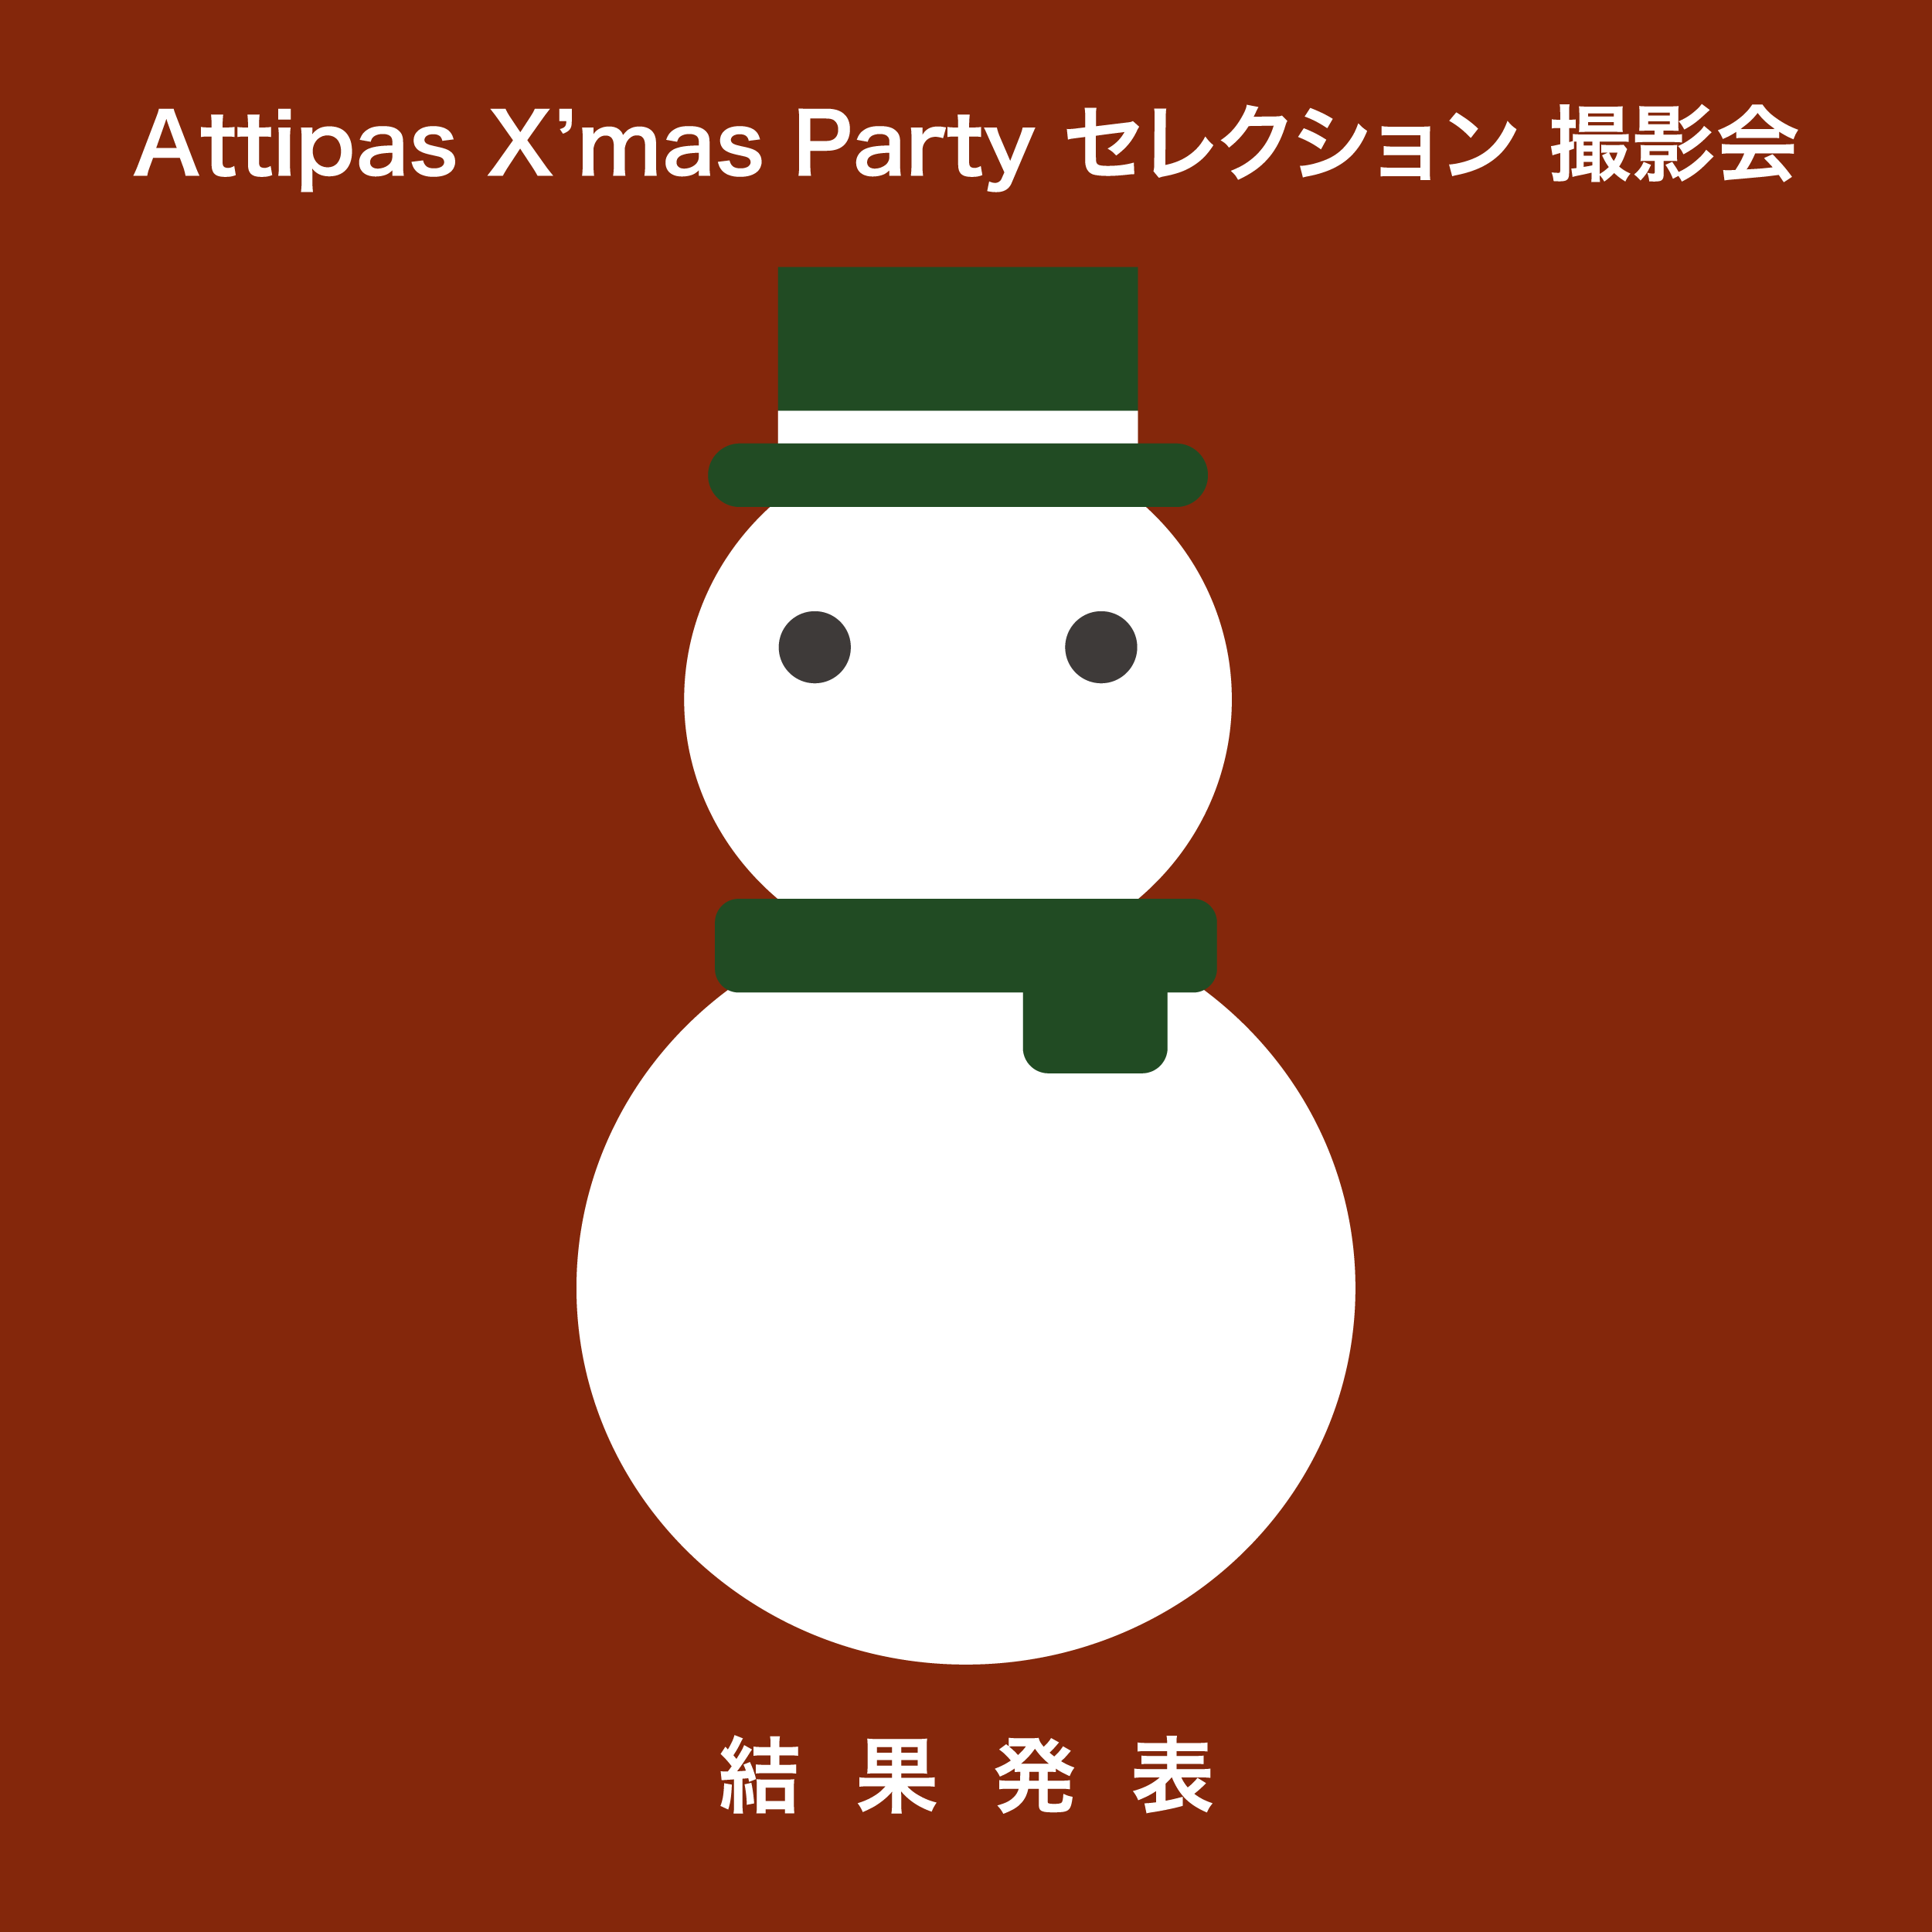 Attipas X’mas Party セレクション 撮影会 結果発表